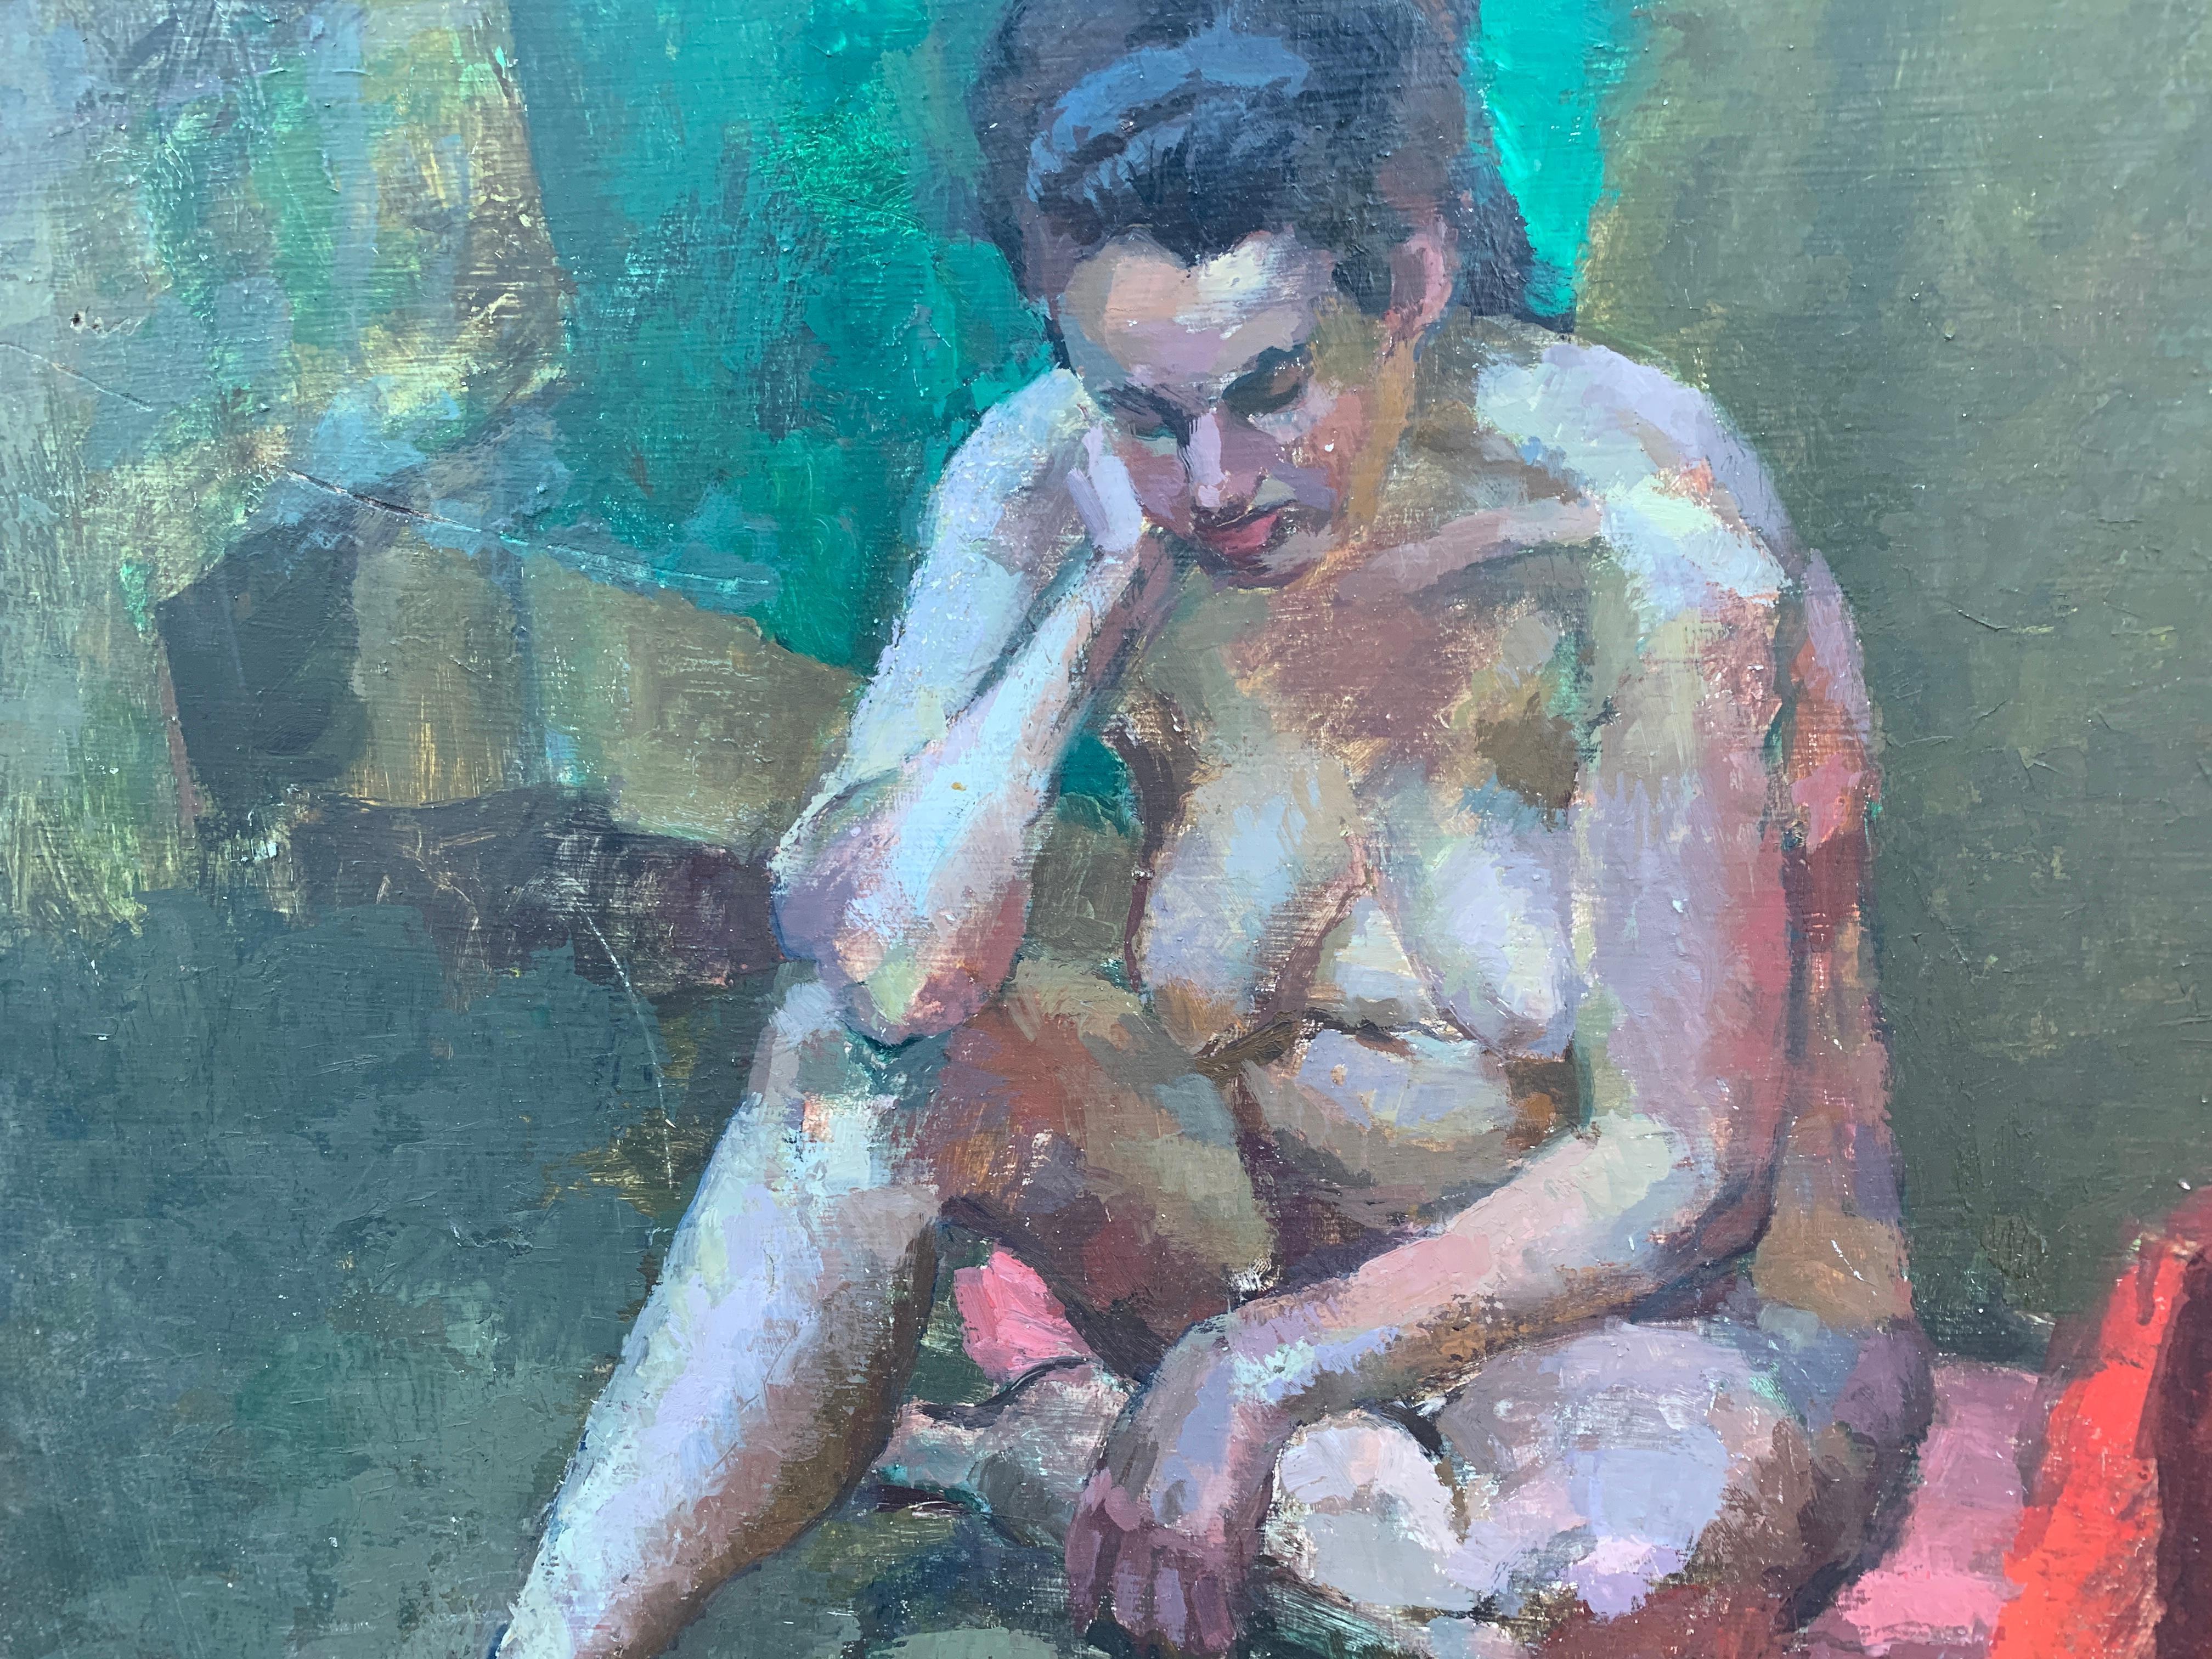 1950's Mid Century modernes Ölporträt einer nackten Frau, die in einem Innenraum lesend sitzt.

Der Künstler war ein Porträt- und Figurenmaler, der in den 1950er und 1960er Jahren tätig war

Großartiger Einsatz von Farbe und abstrakten